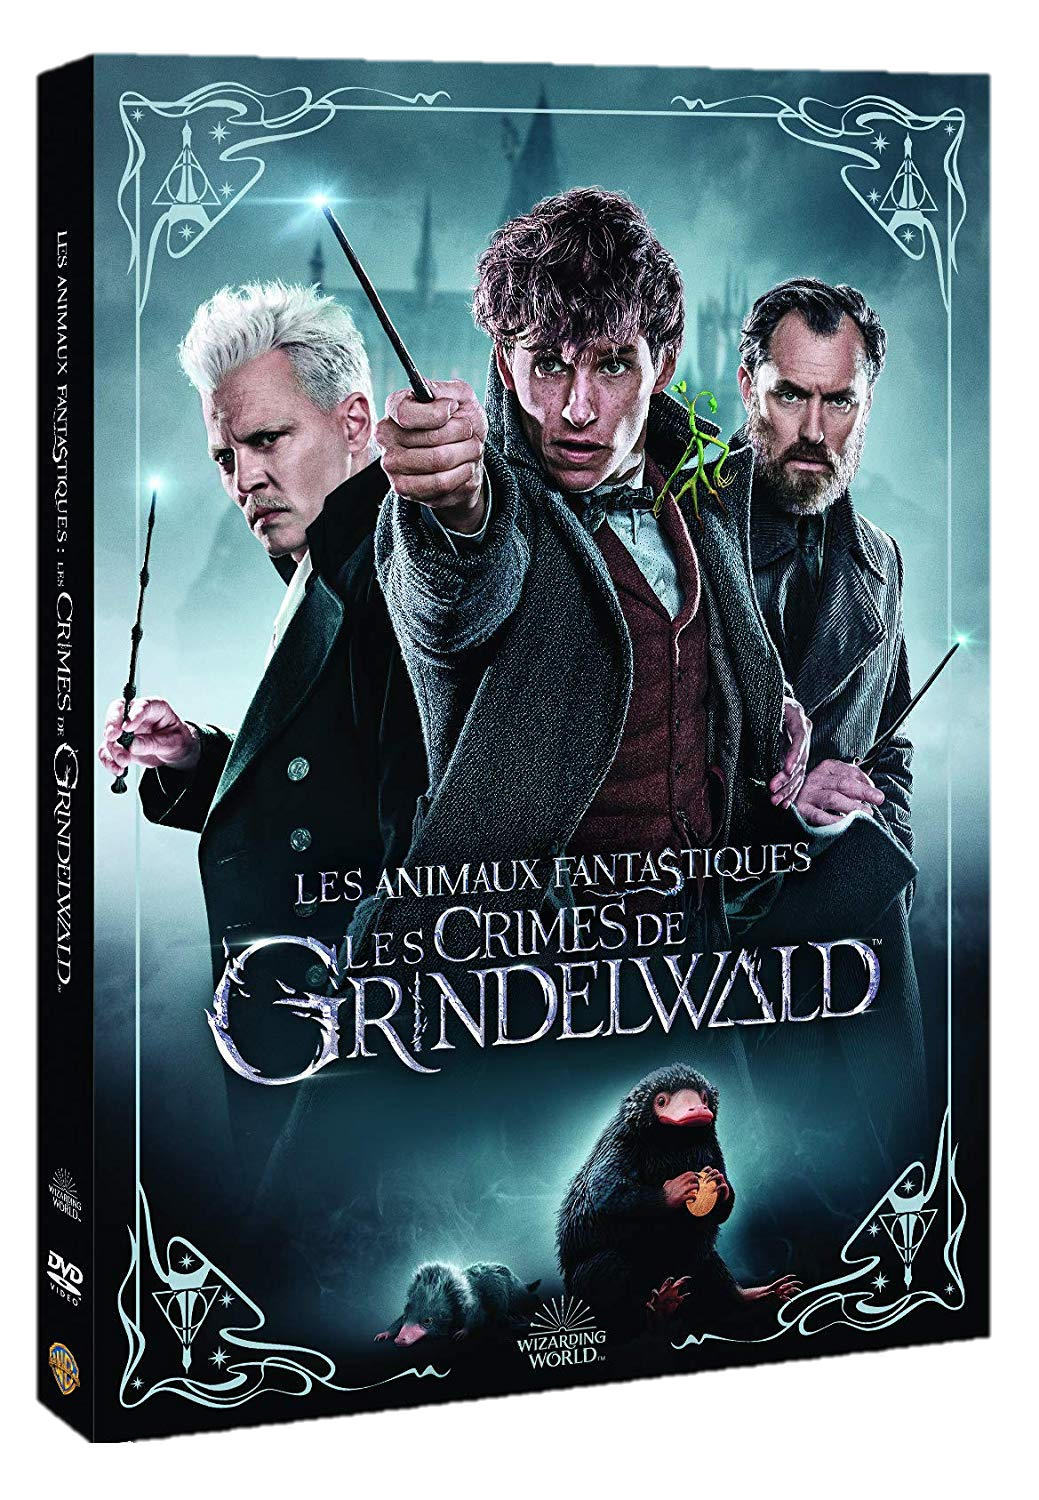 flashvideofilm - Les animaux fantastiques 2 : Les crimes de Grindelwald " DVD à la location " - Location